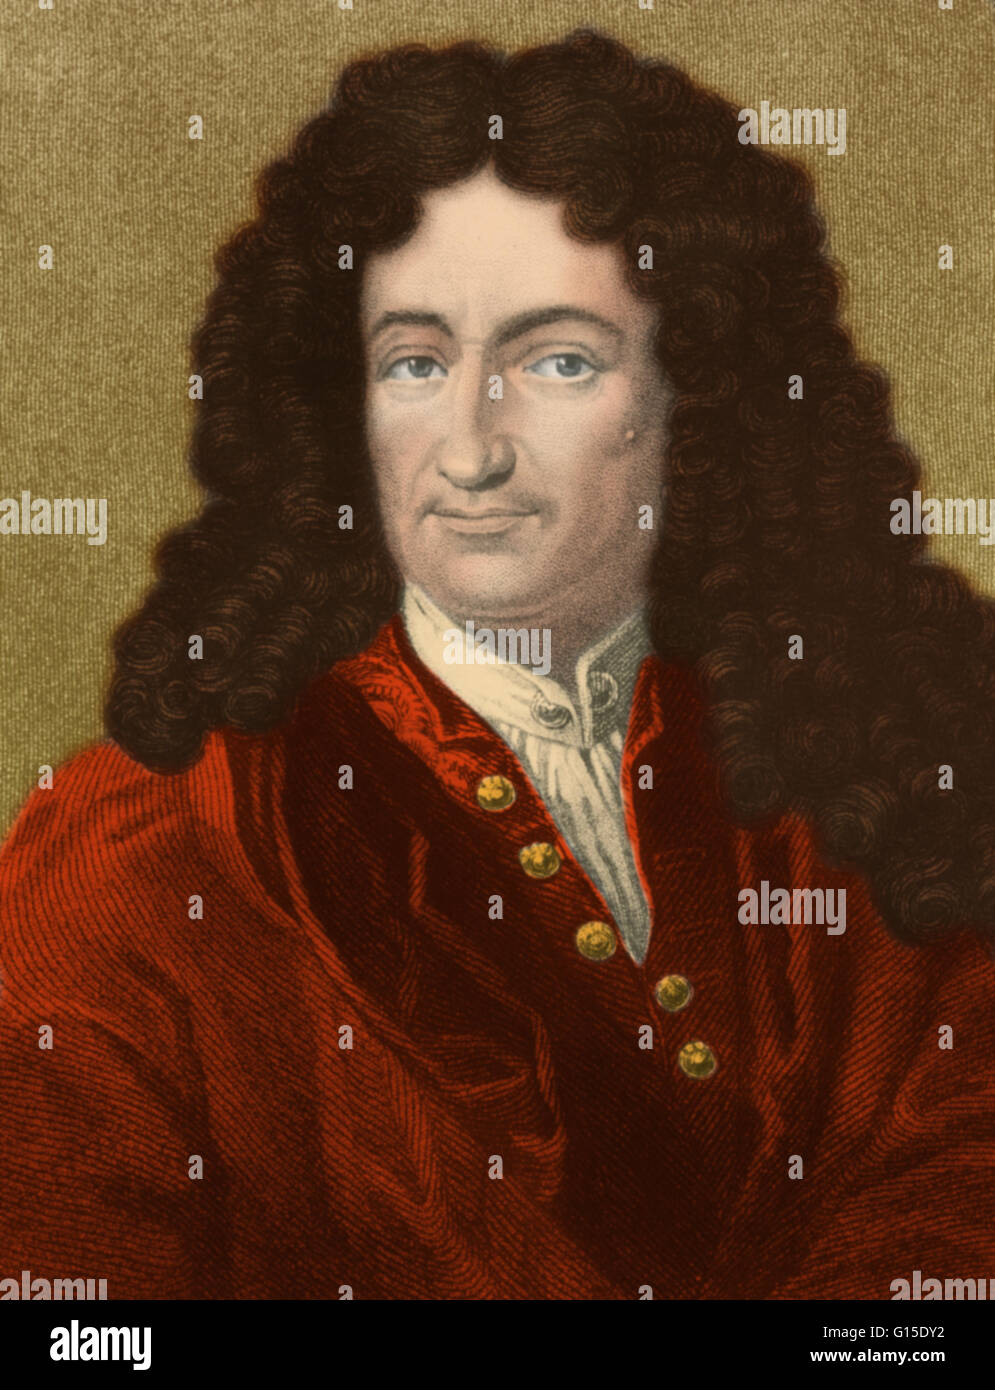 Gottfried Wilhelm Leibniz (von Leibniz) (1 luglio 1646 - 14 novembre 1716) era un tedesco del matematico e filosofo. Leibniz occupa un posto di spicco nella storia della matematica e la storia della filosofia. La sua notazione matematica è stata ampiamente Foto Stock